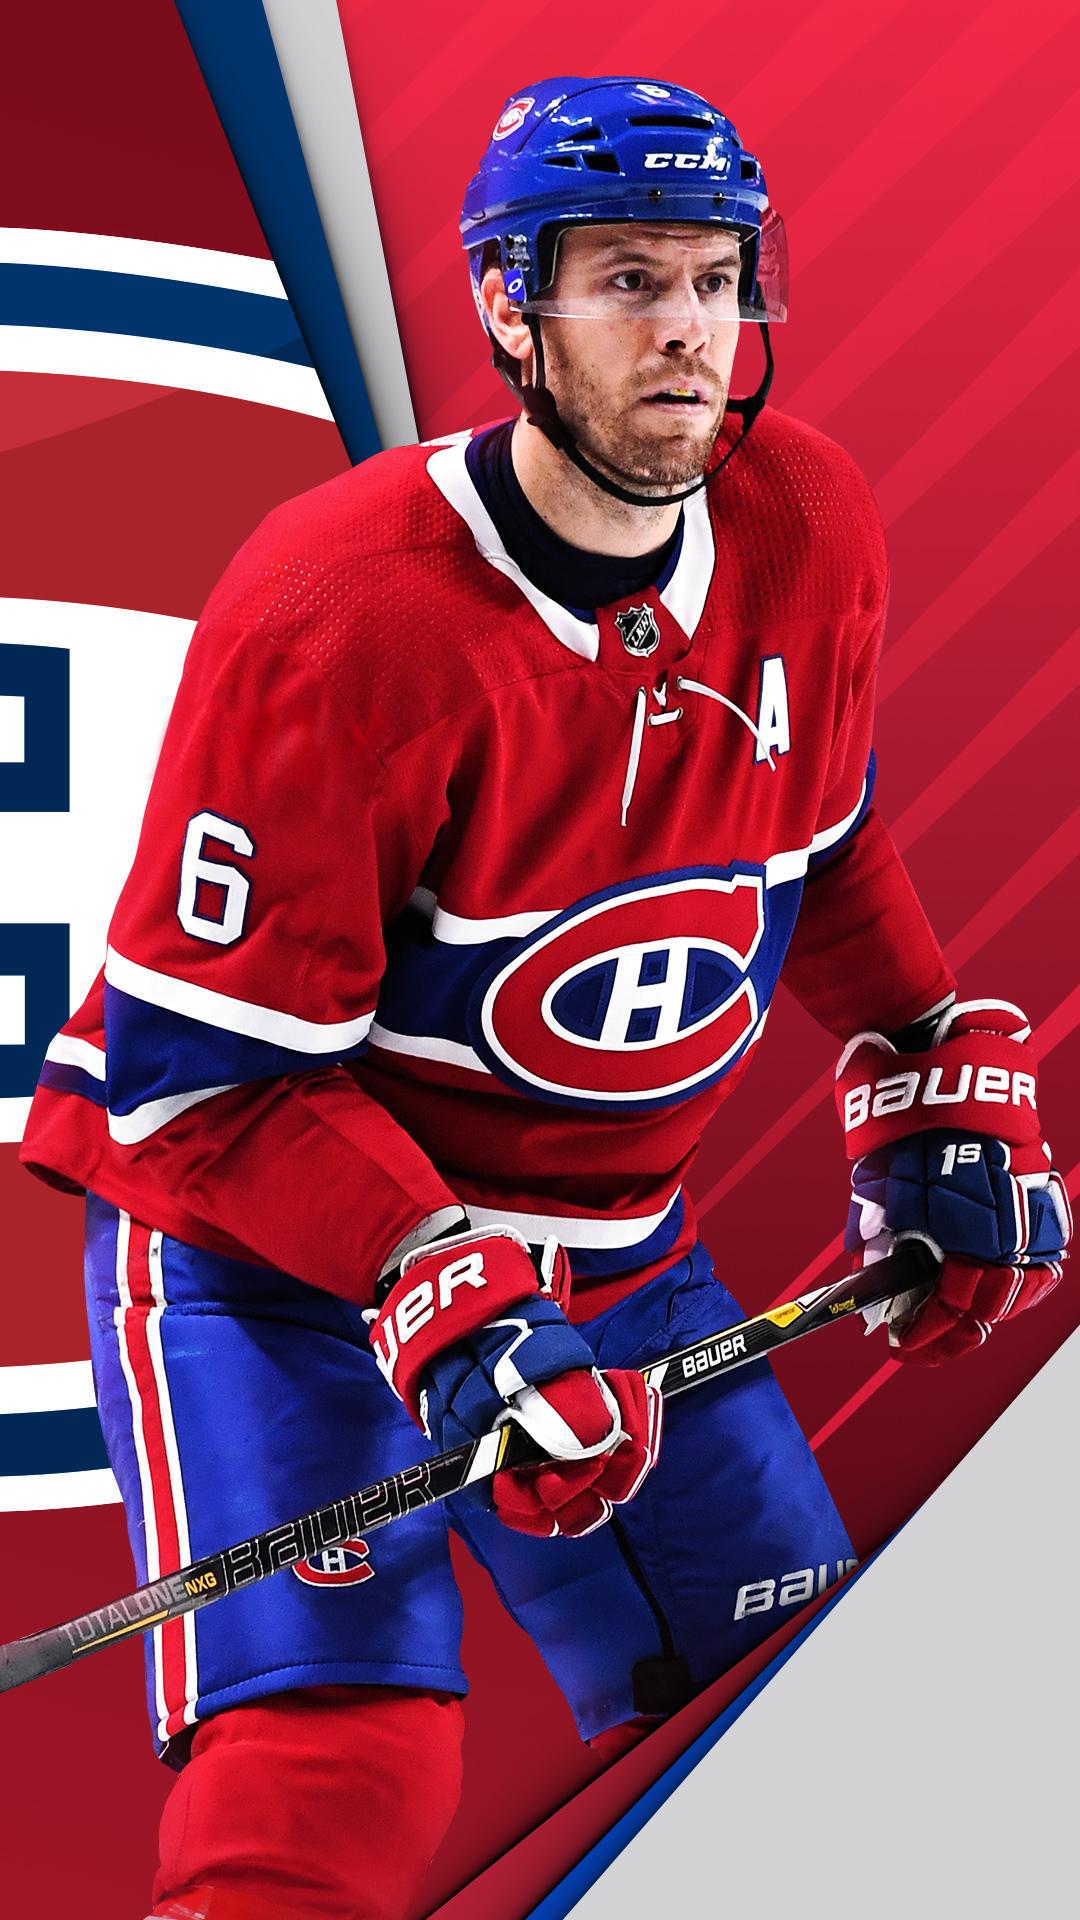 Wallpaper. Montréal Canadiens